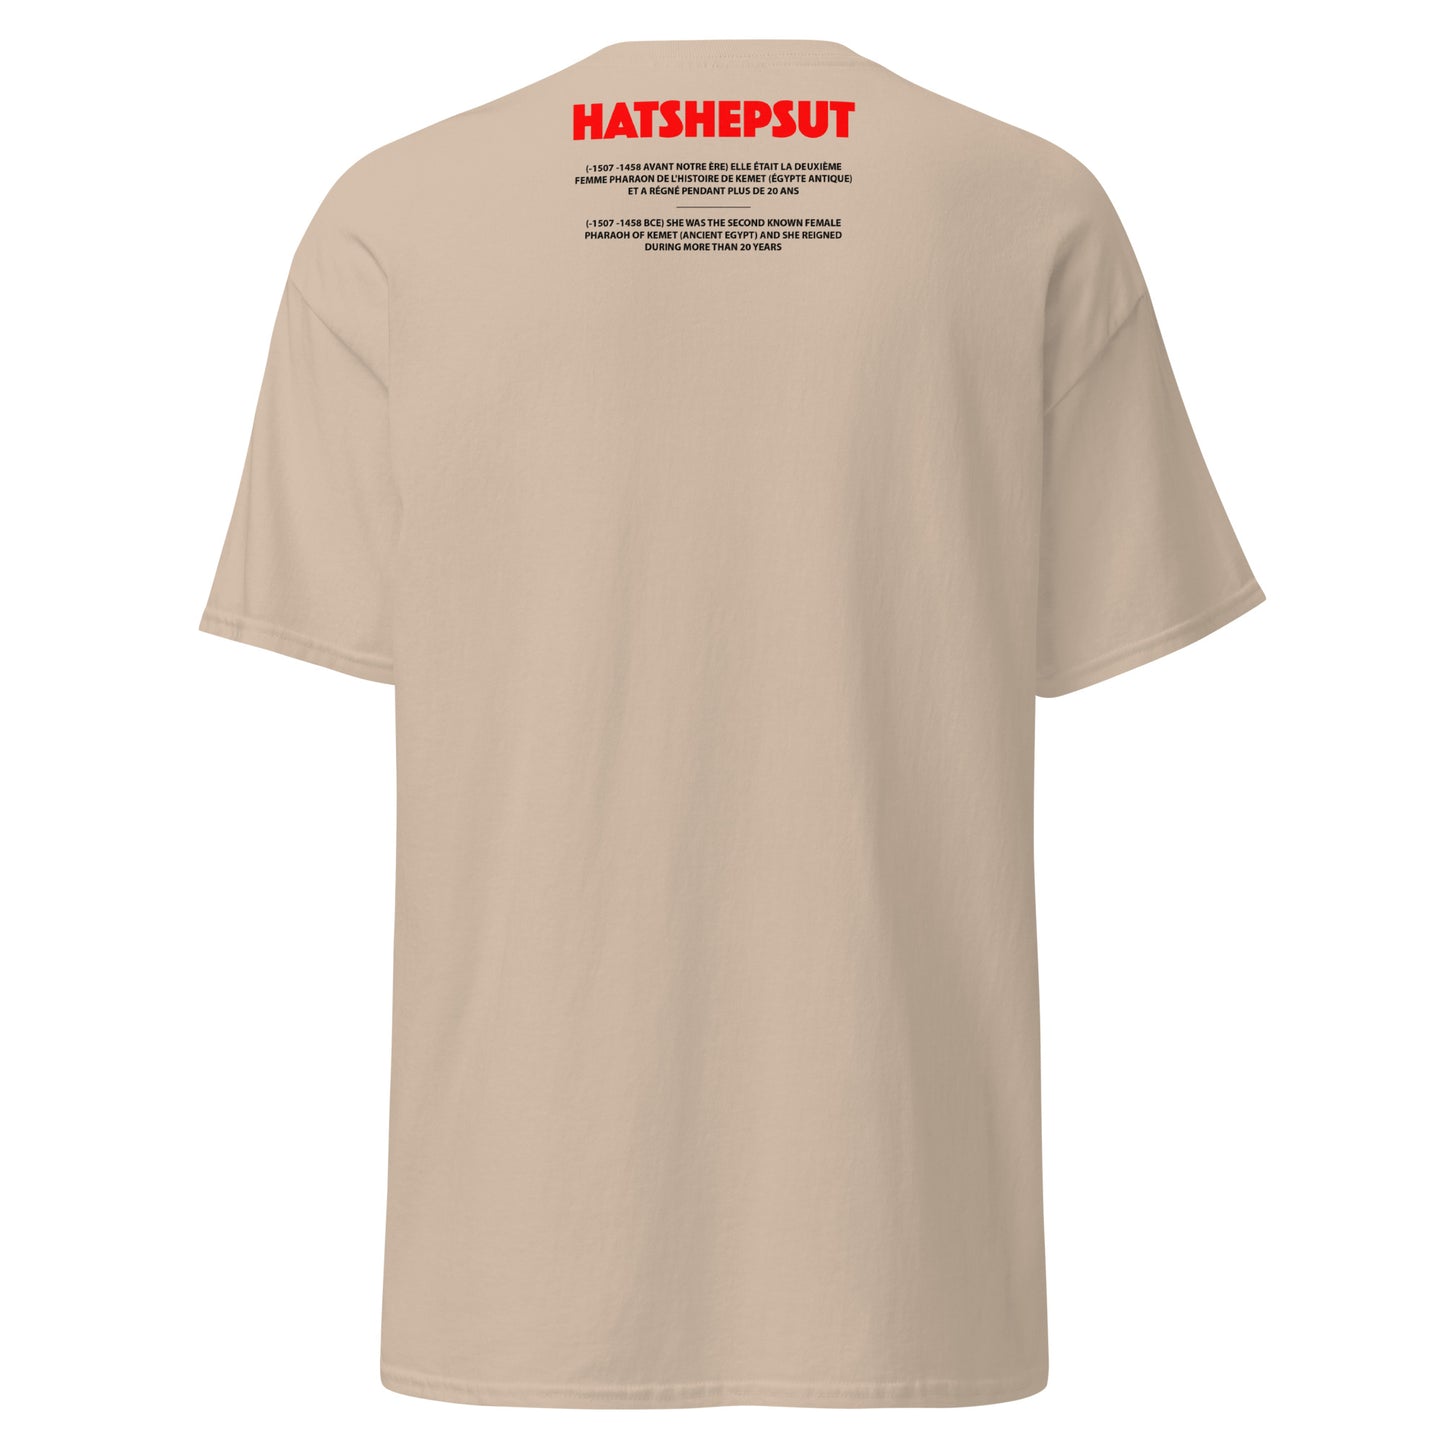 HATSHEPSUT (T-shirt)